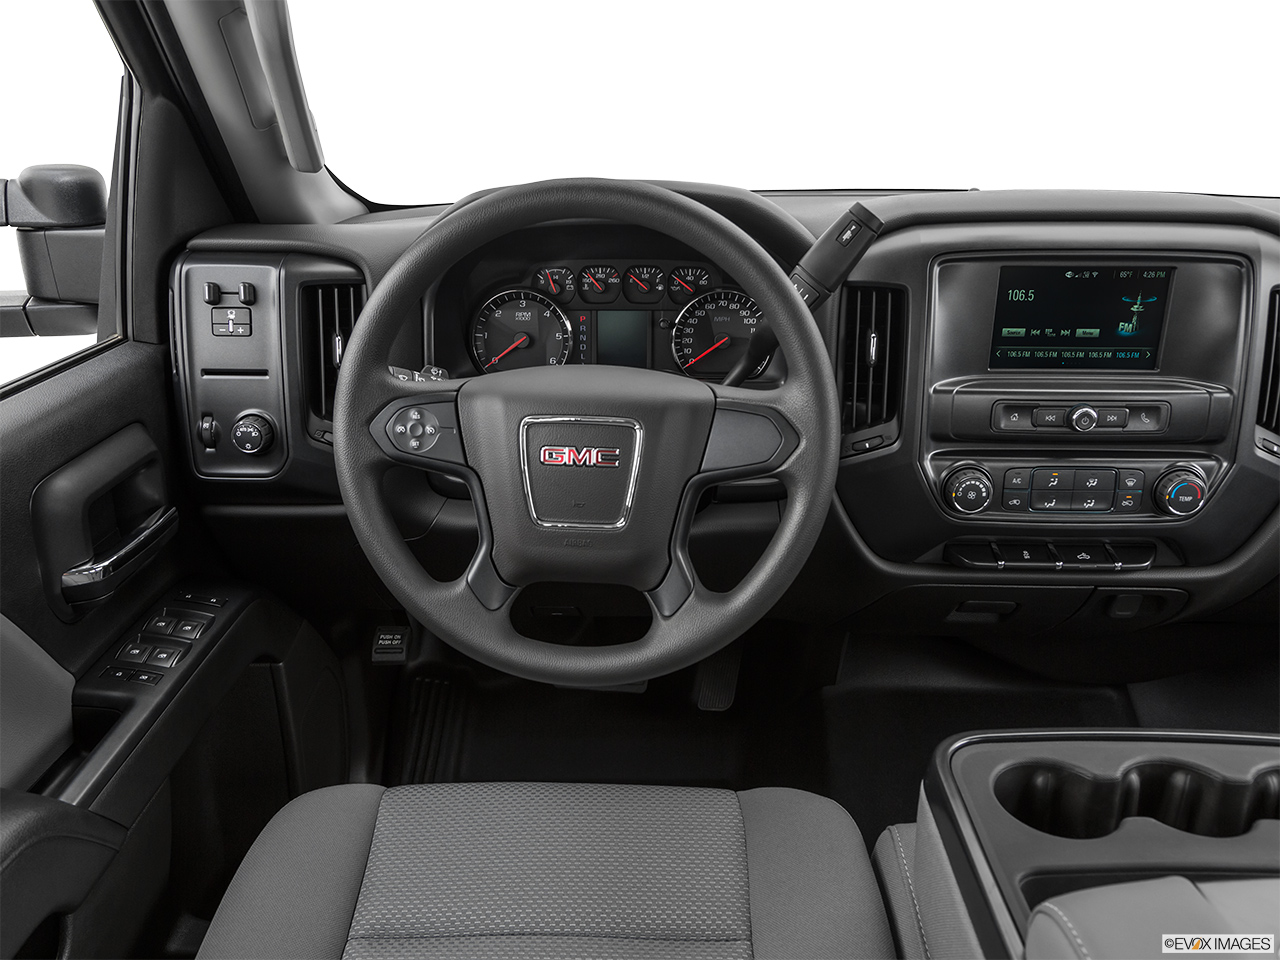 2019 GMC Sierra 2500HD Base Steering wheel/Center Console. 